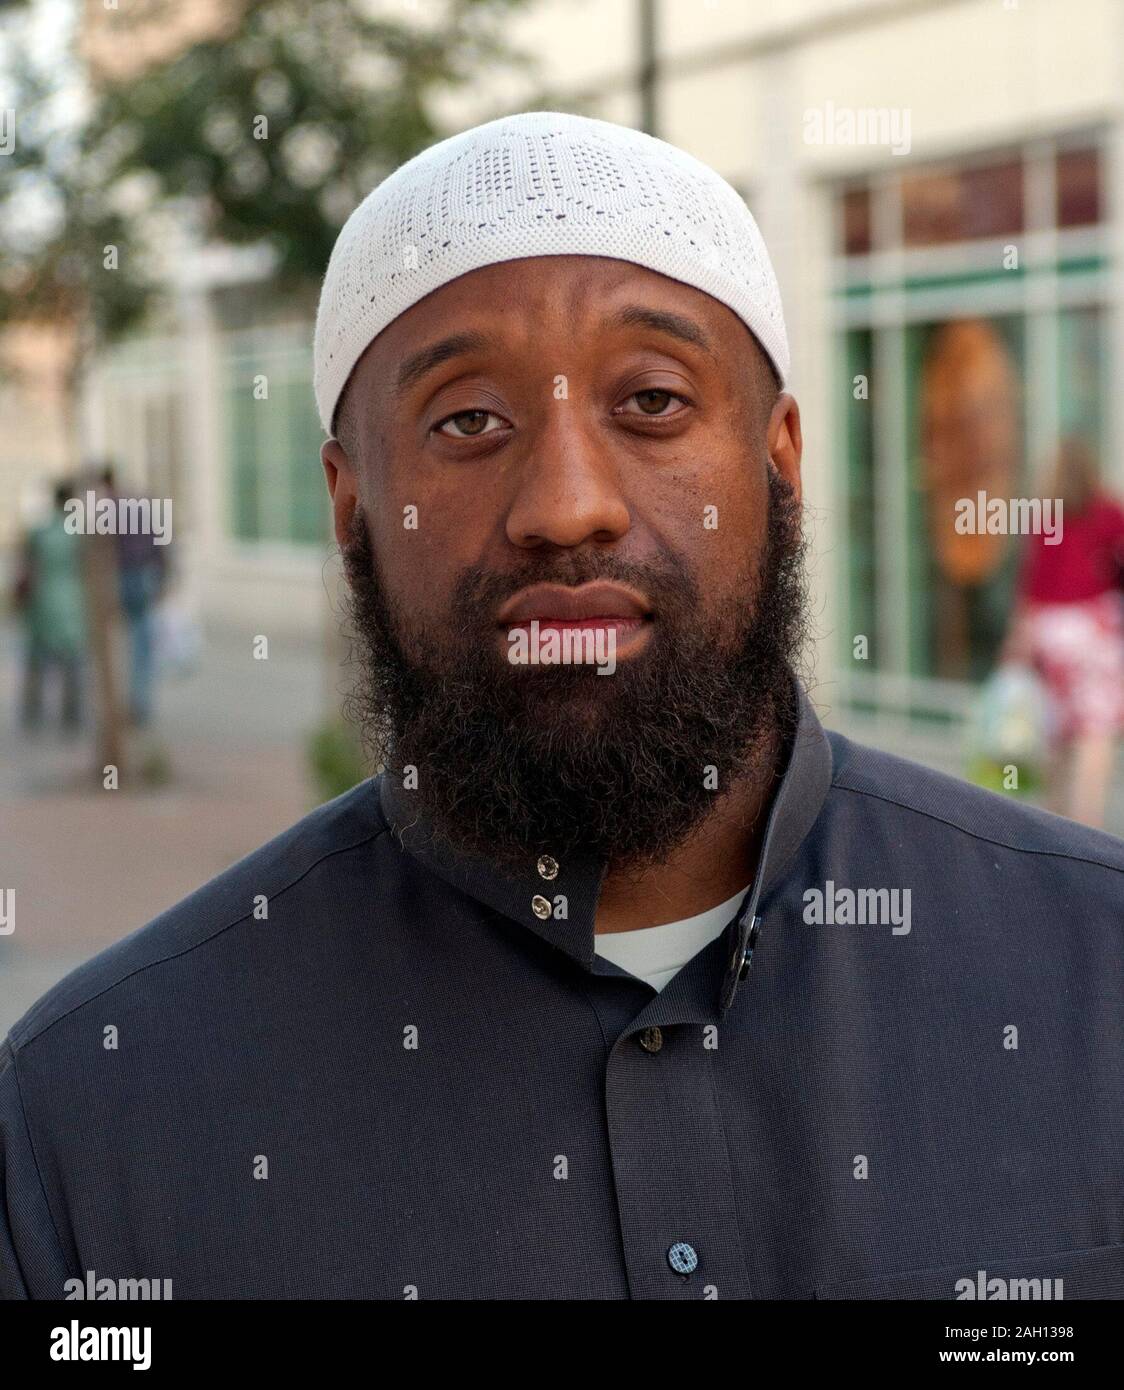 Abu Izzadeen organizador de una protesta para introducir la Sharia (ley islámica), zonas en Walthamstow. Foto de stock